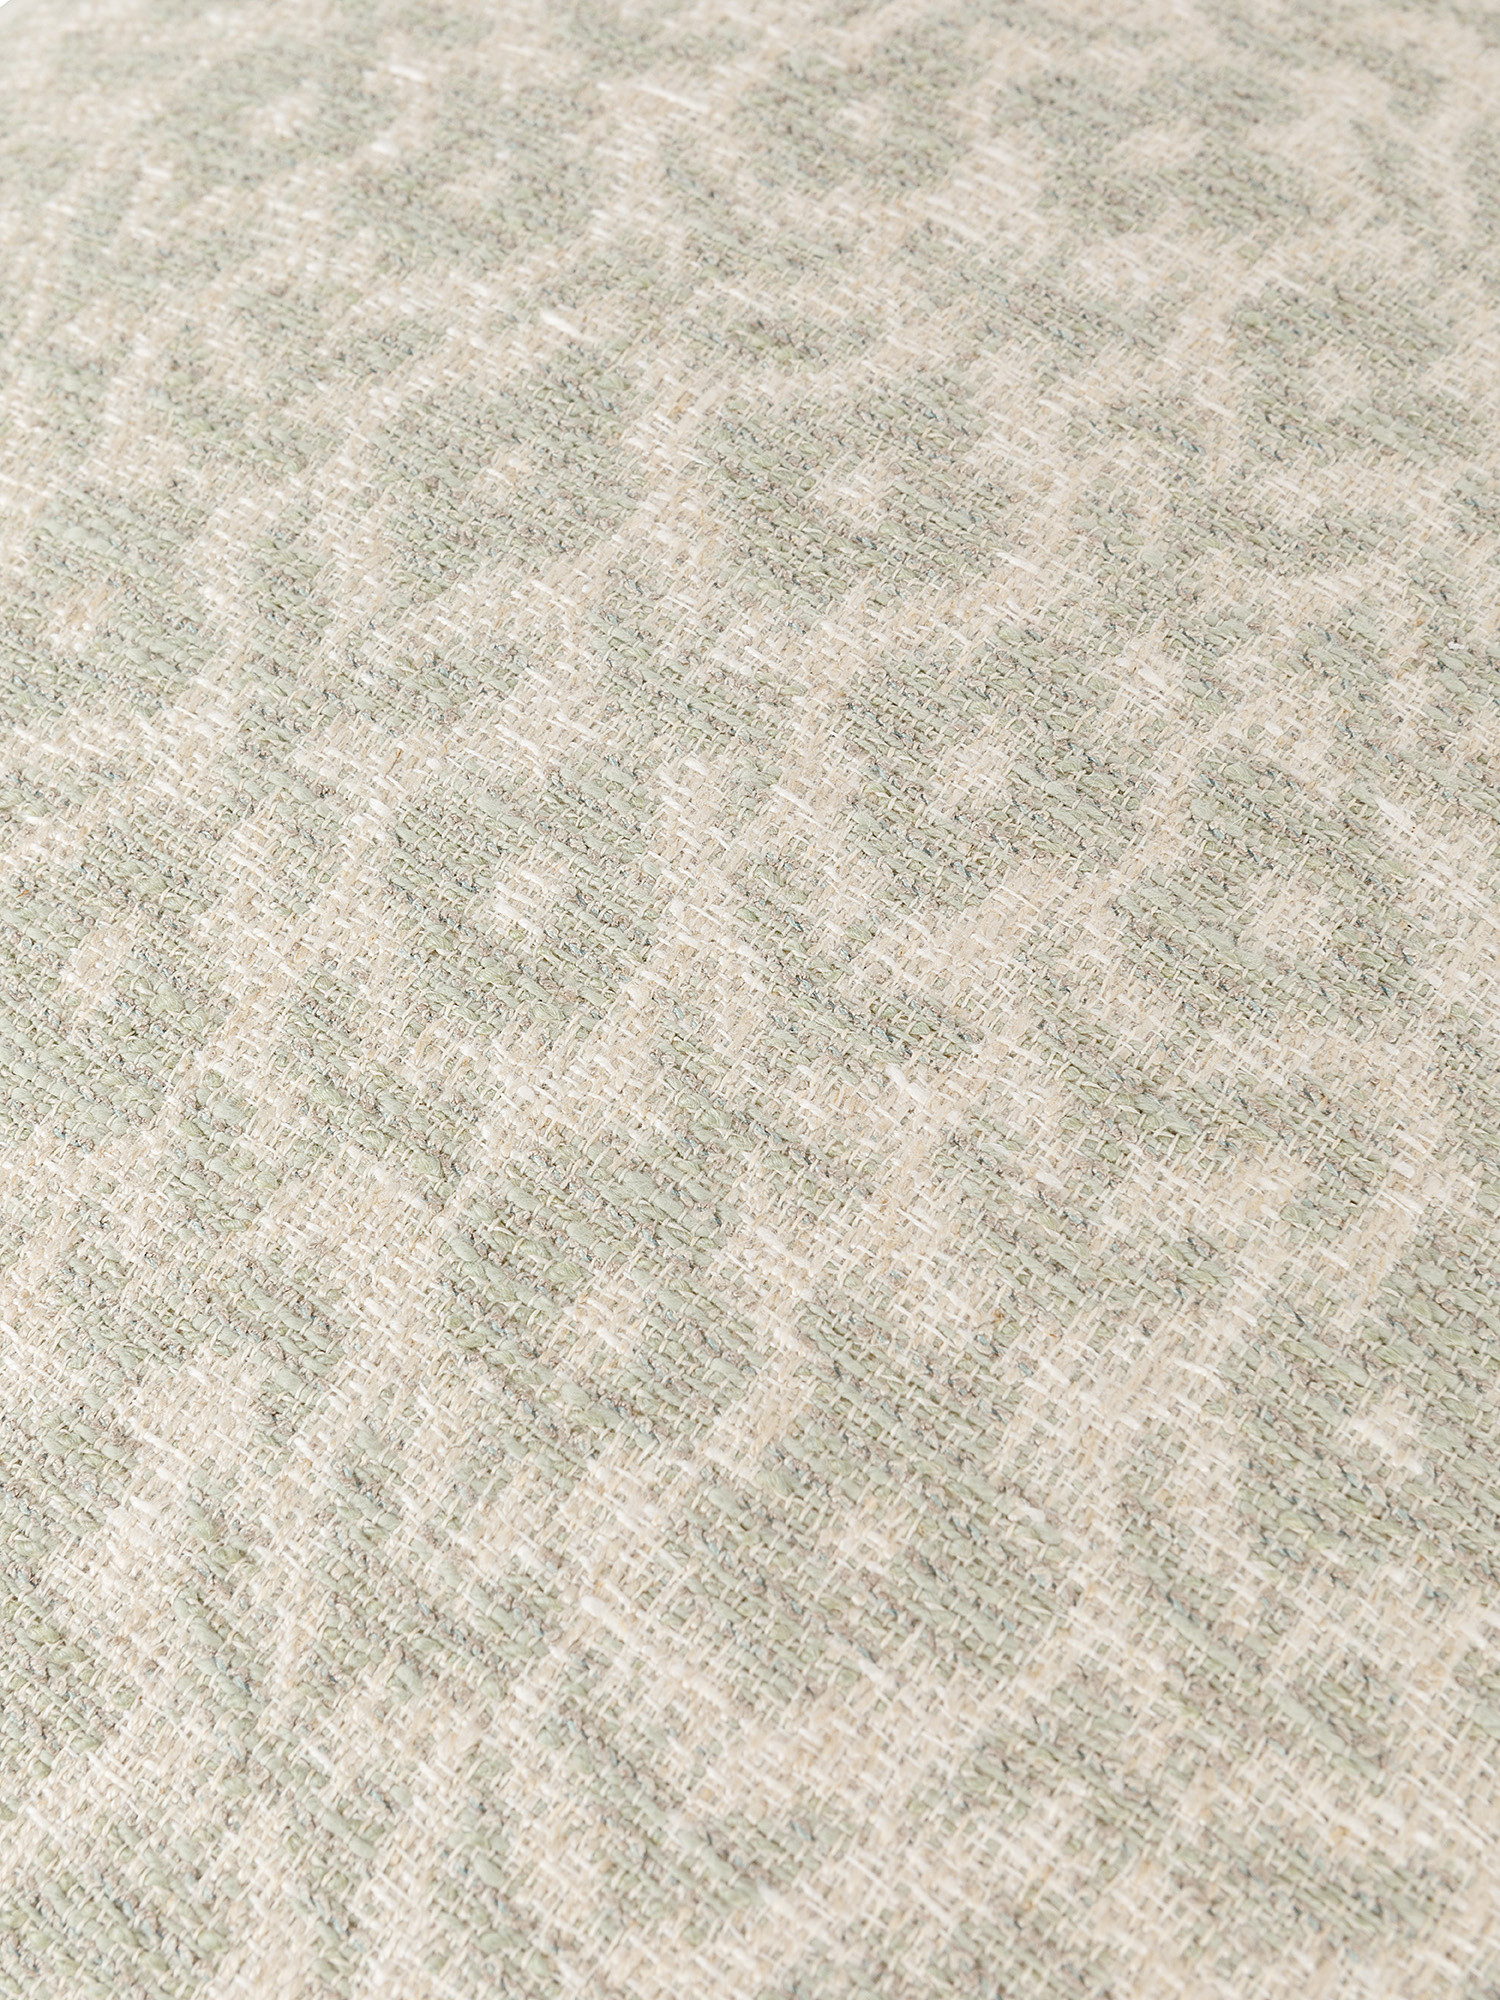 Cuscino misto lino e cotone motivo fiori 50x50cm, Beige, large image number 2